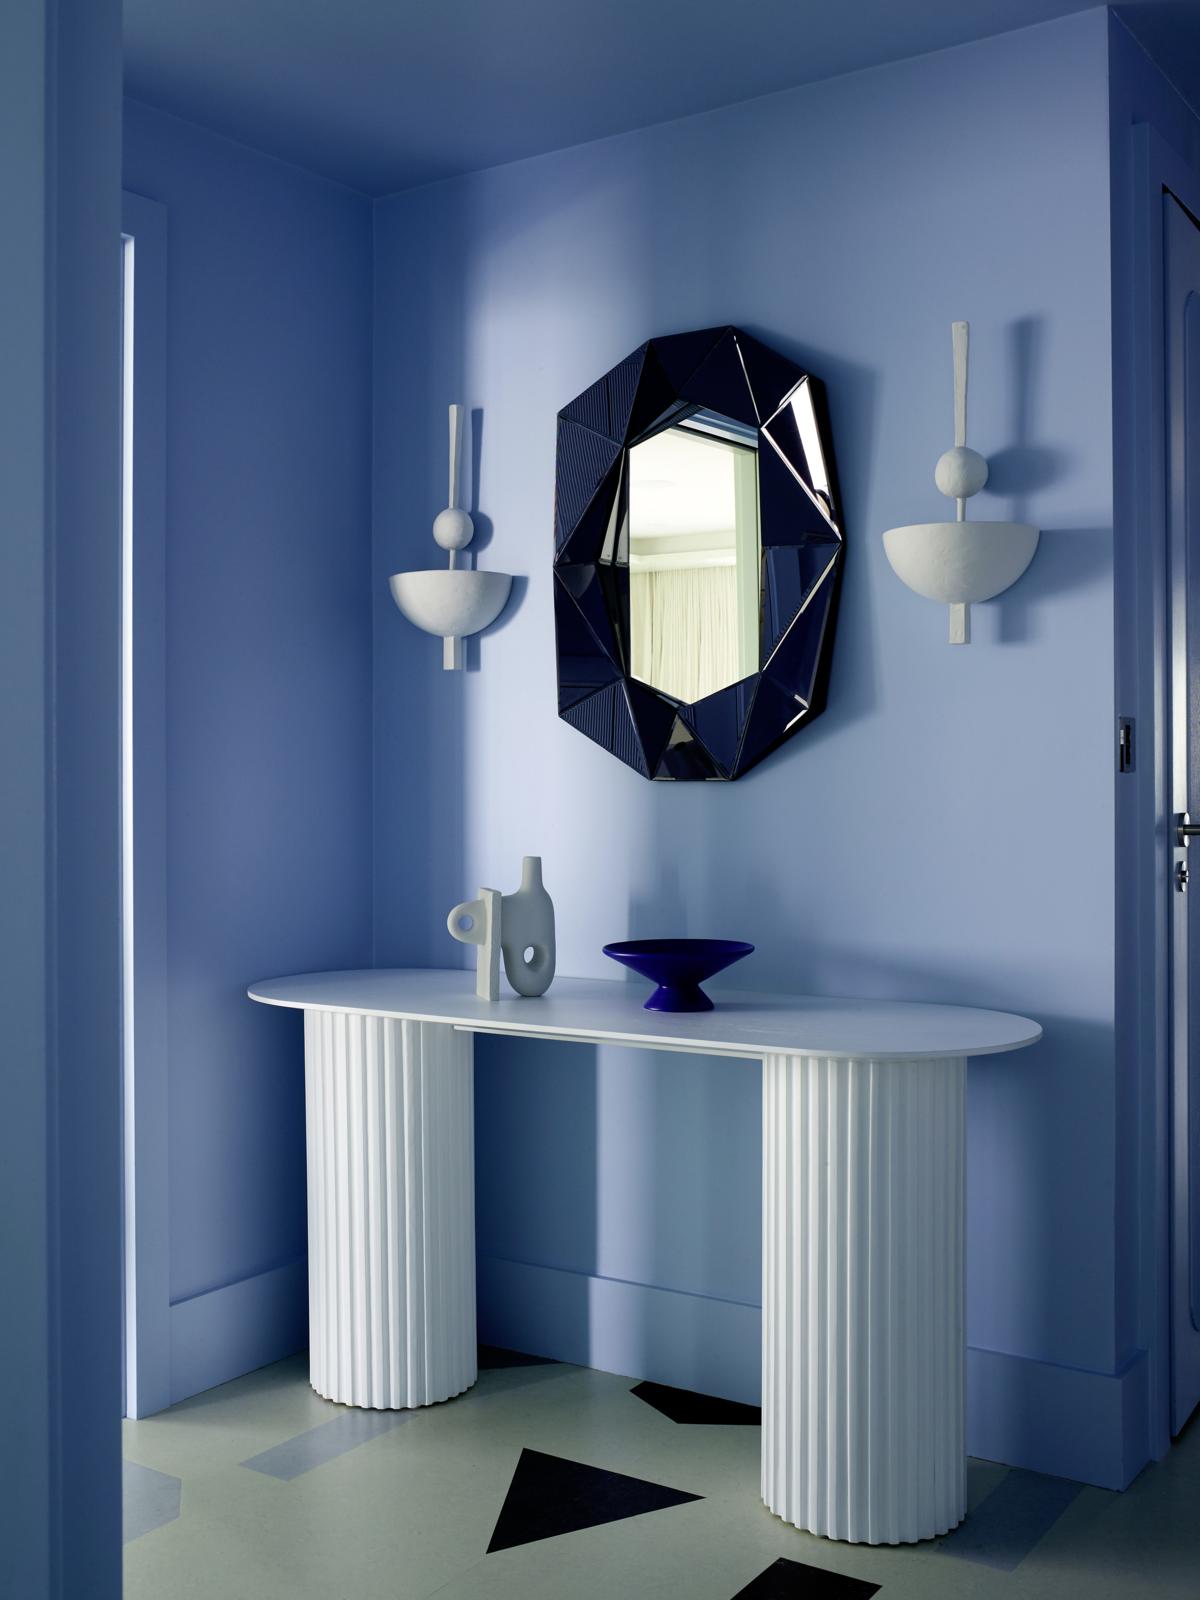 Giữa phông nền màu xanh lam êm dịu, tấm gương đa giác lồi với màu xanh coban 'đậm đặc' tạo nên một điểm nhấn hoàn hảo, đặt tại trung tâm 2 chiếc đèn gắn tường không kém phần đẹp mắt.